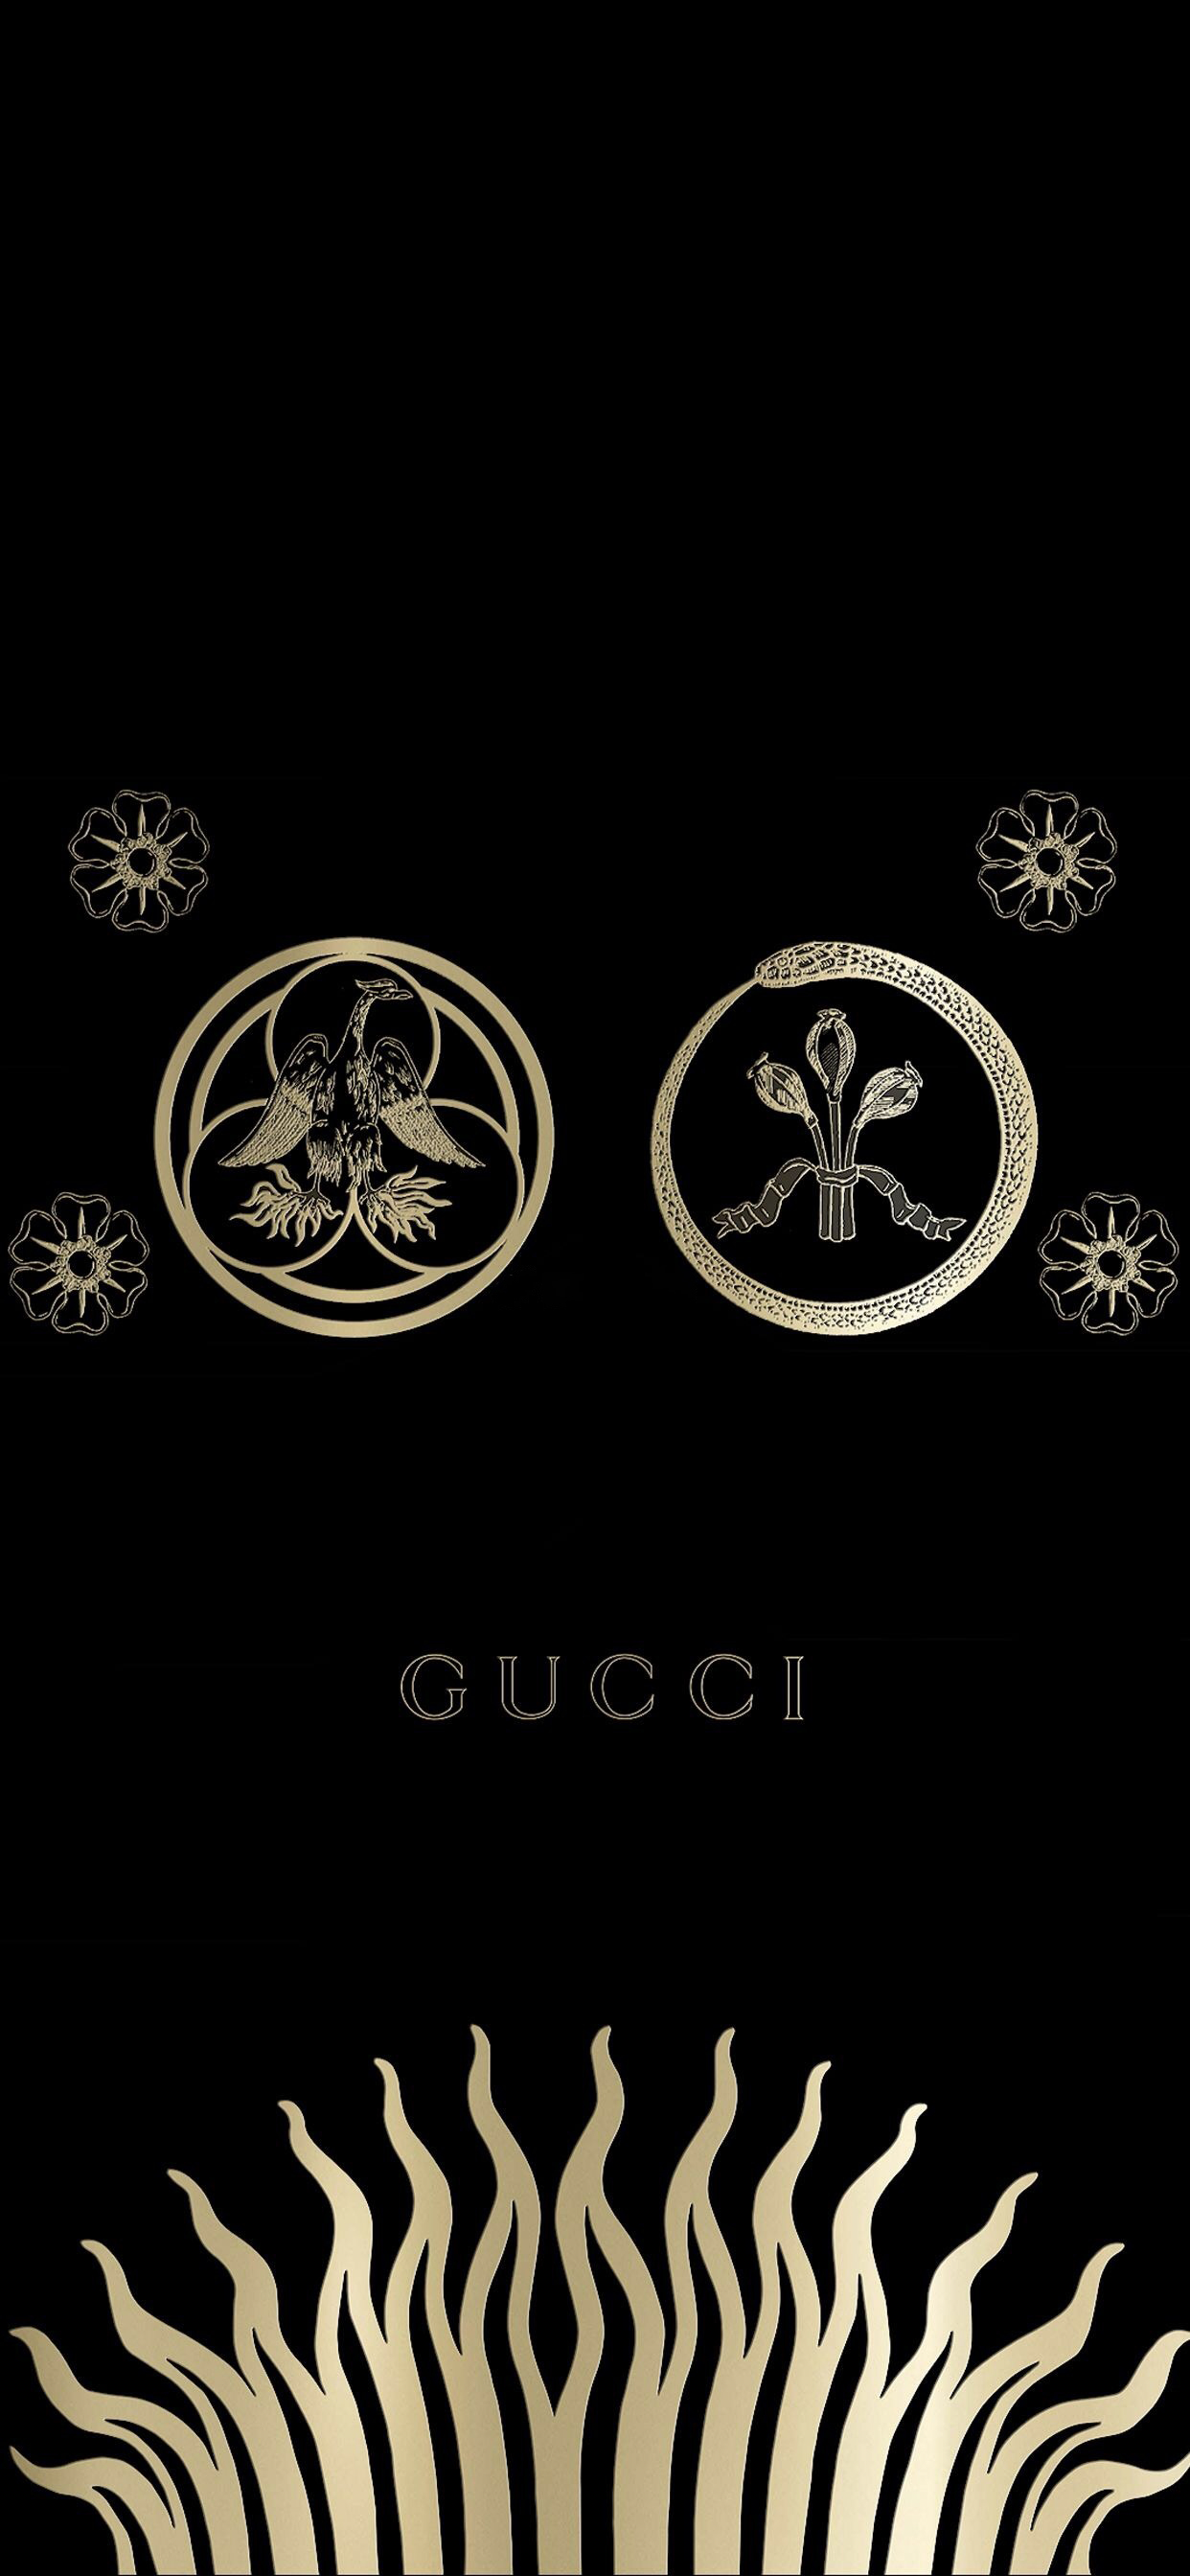 Tải về 99 hình nền Gucci ảnh nền Gucci đẹp  QuanTriMangcom